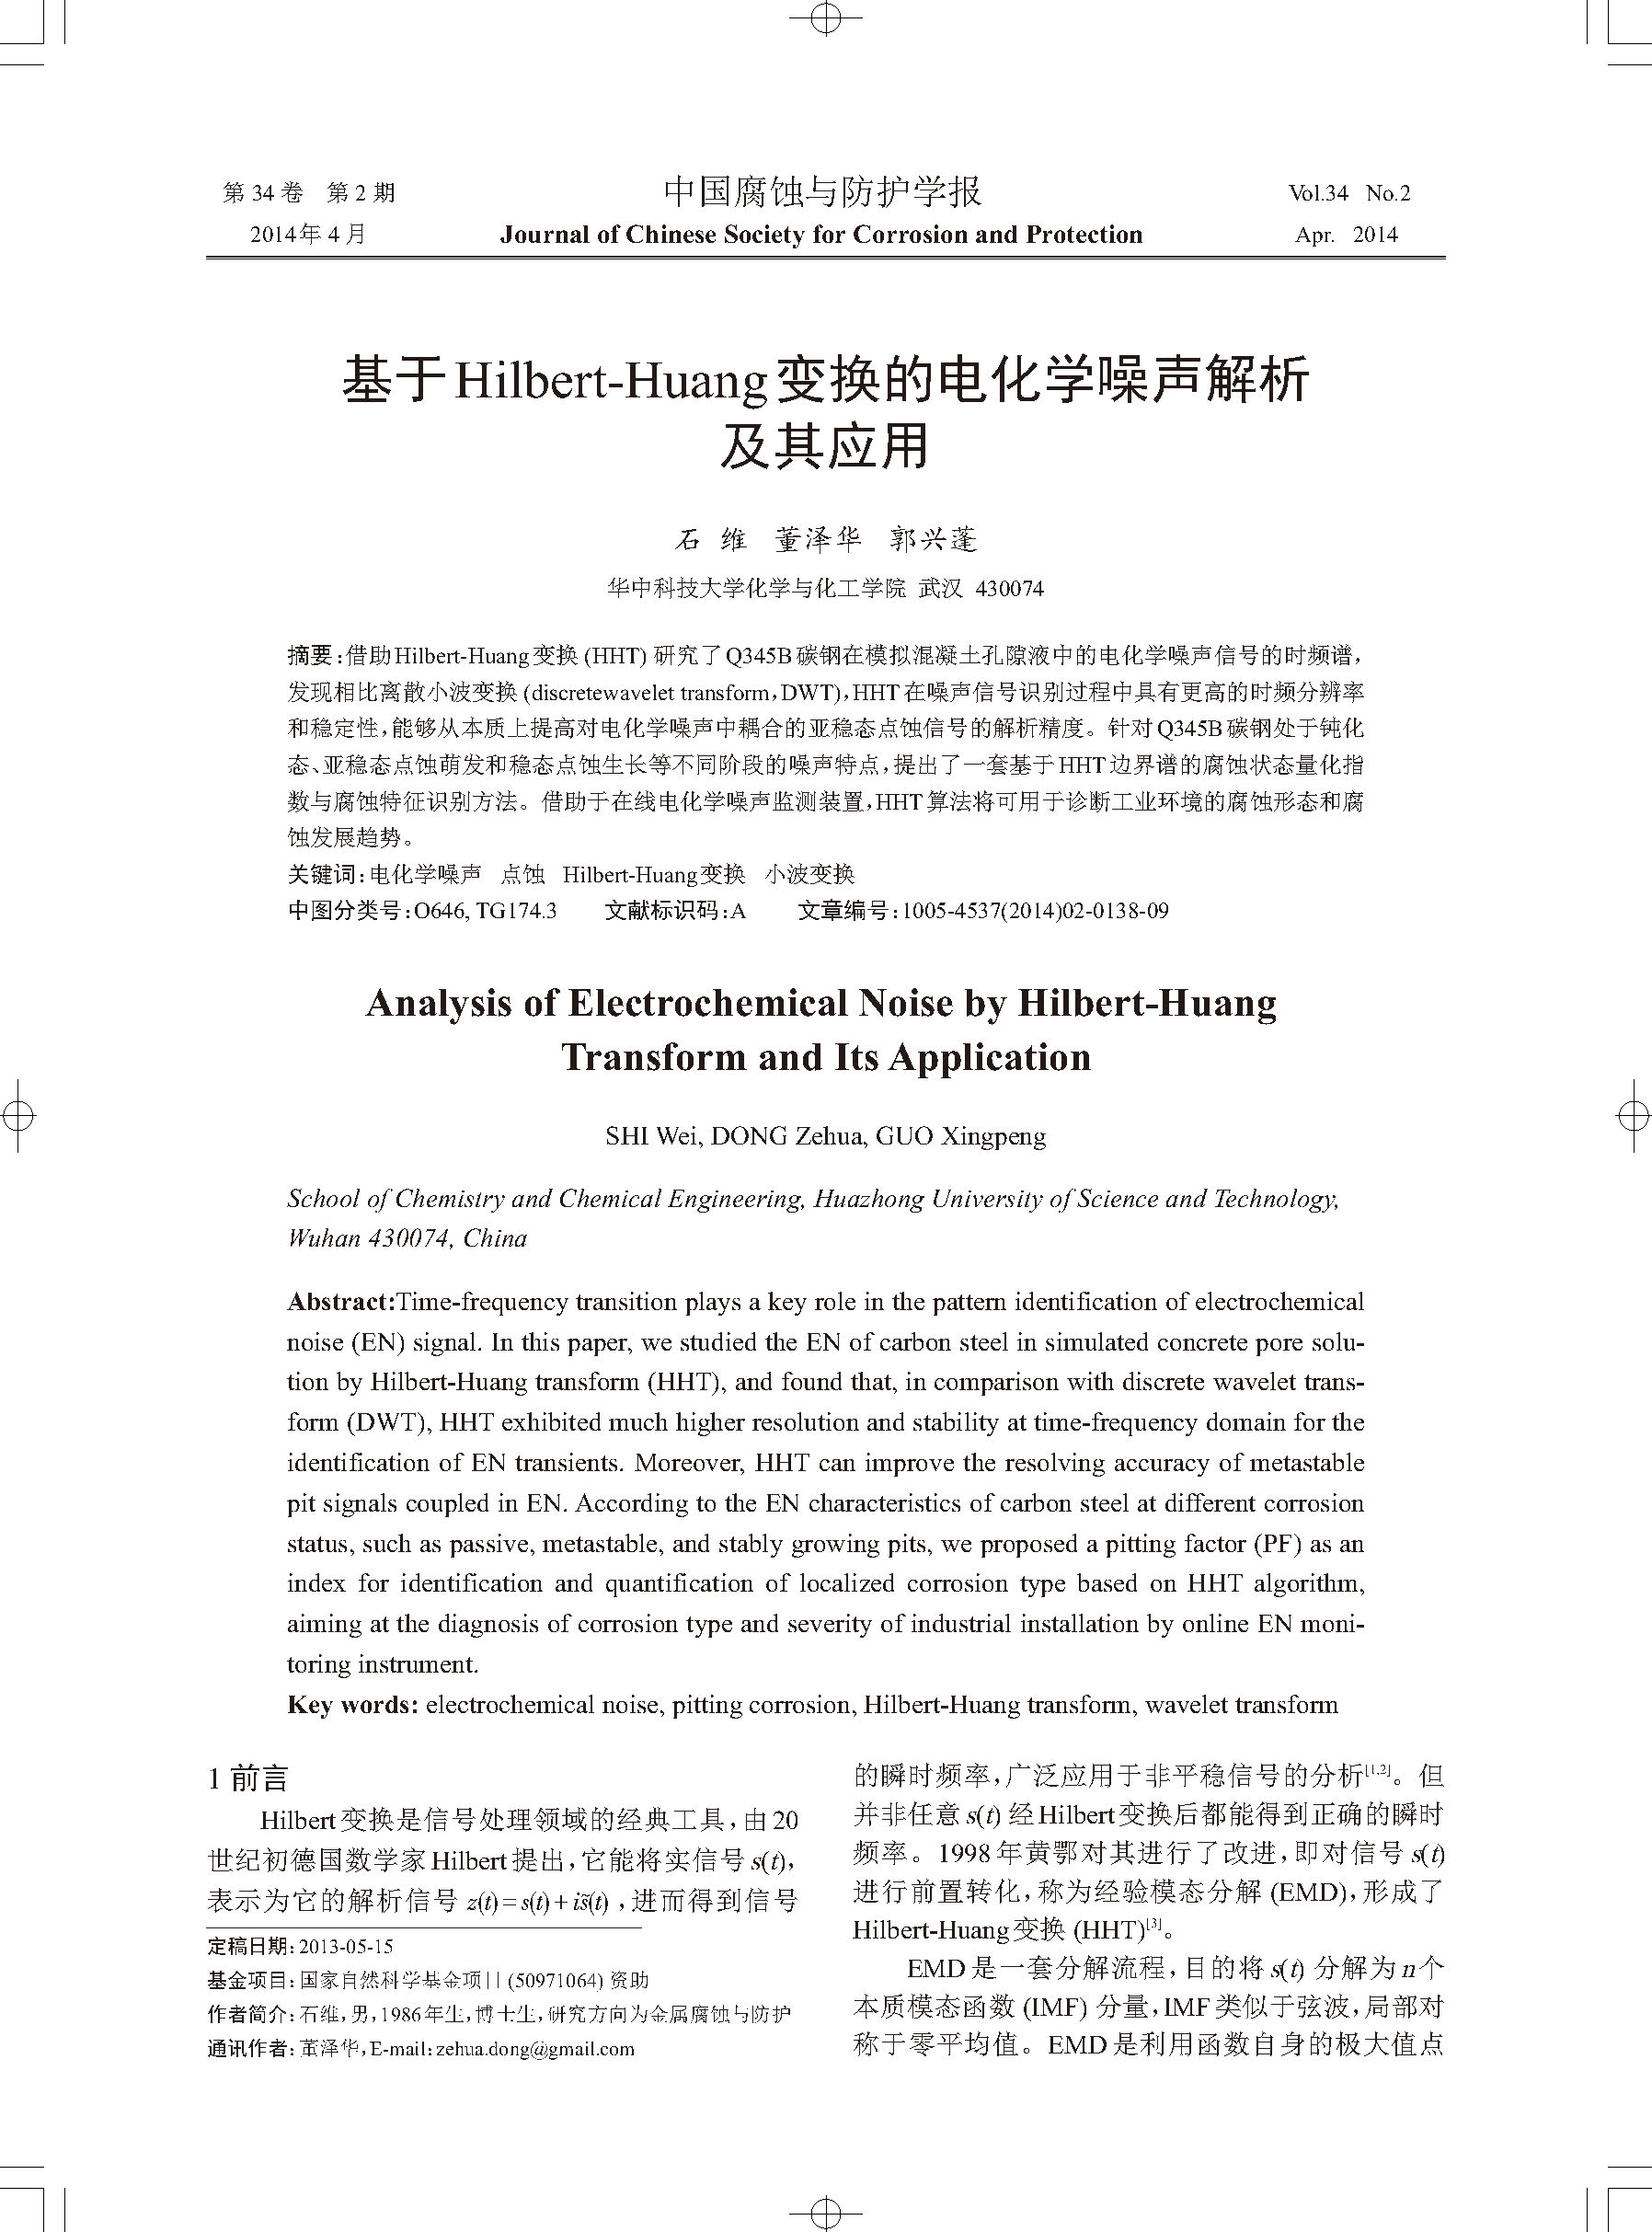 基于Hilbert-Huang变换的电化学噪声解析及其应用_页面_1.jpg